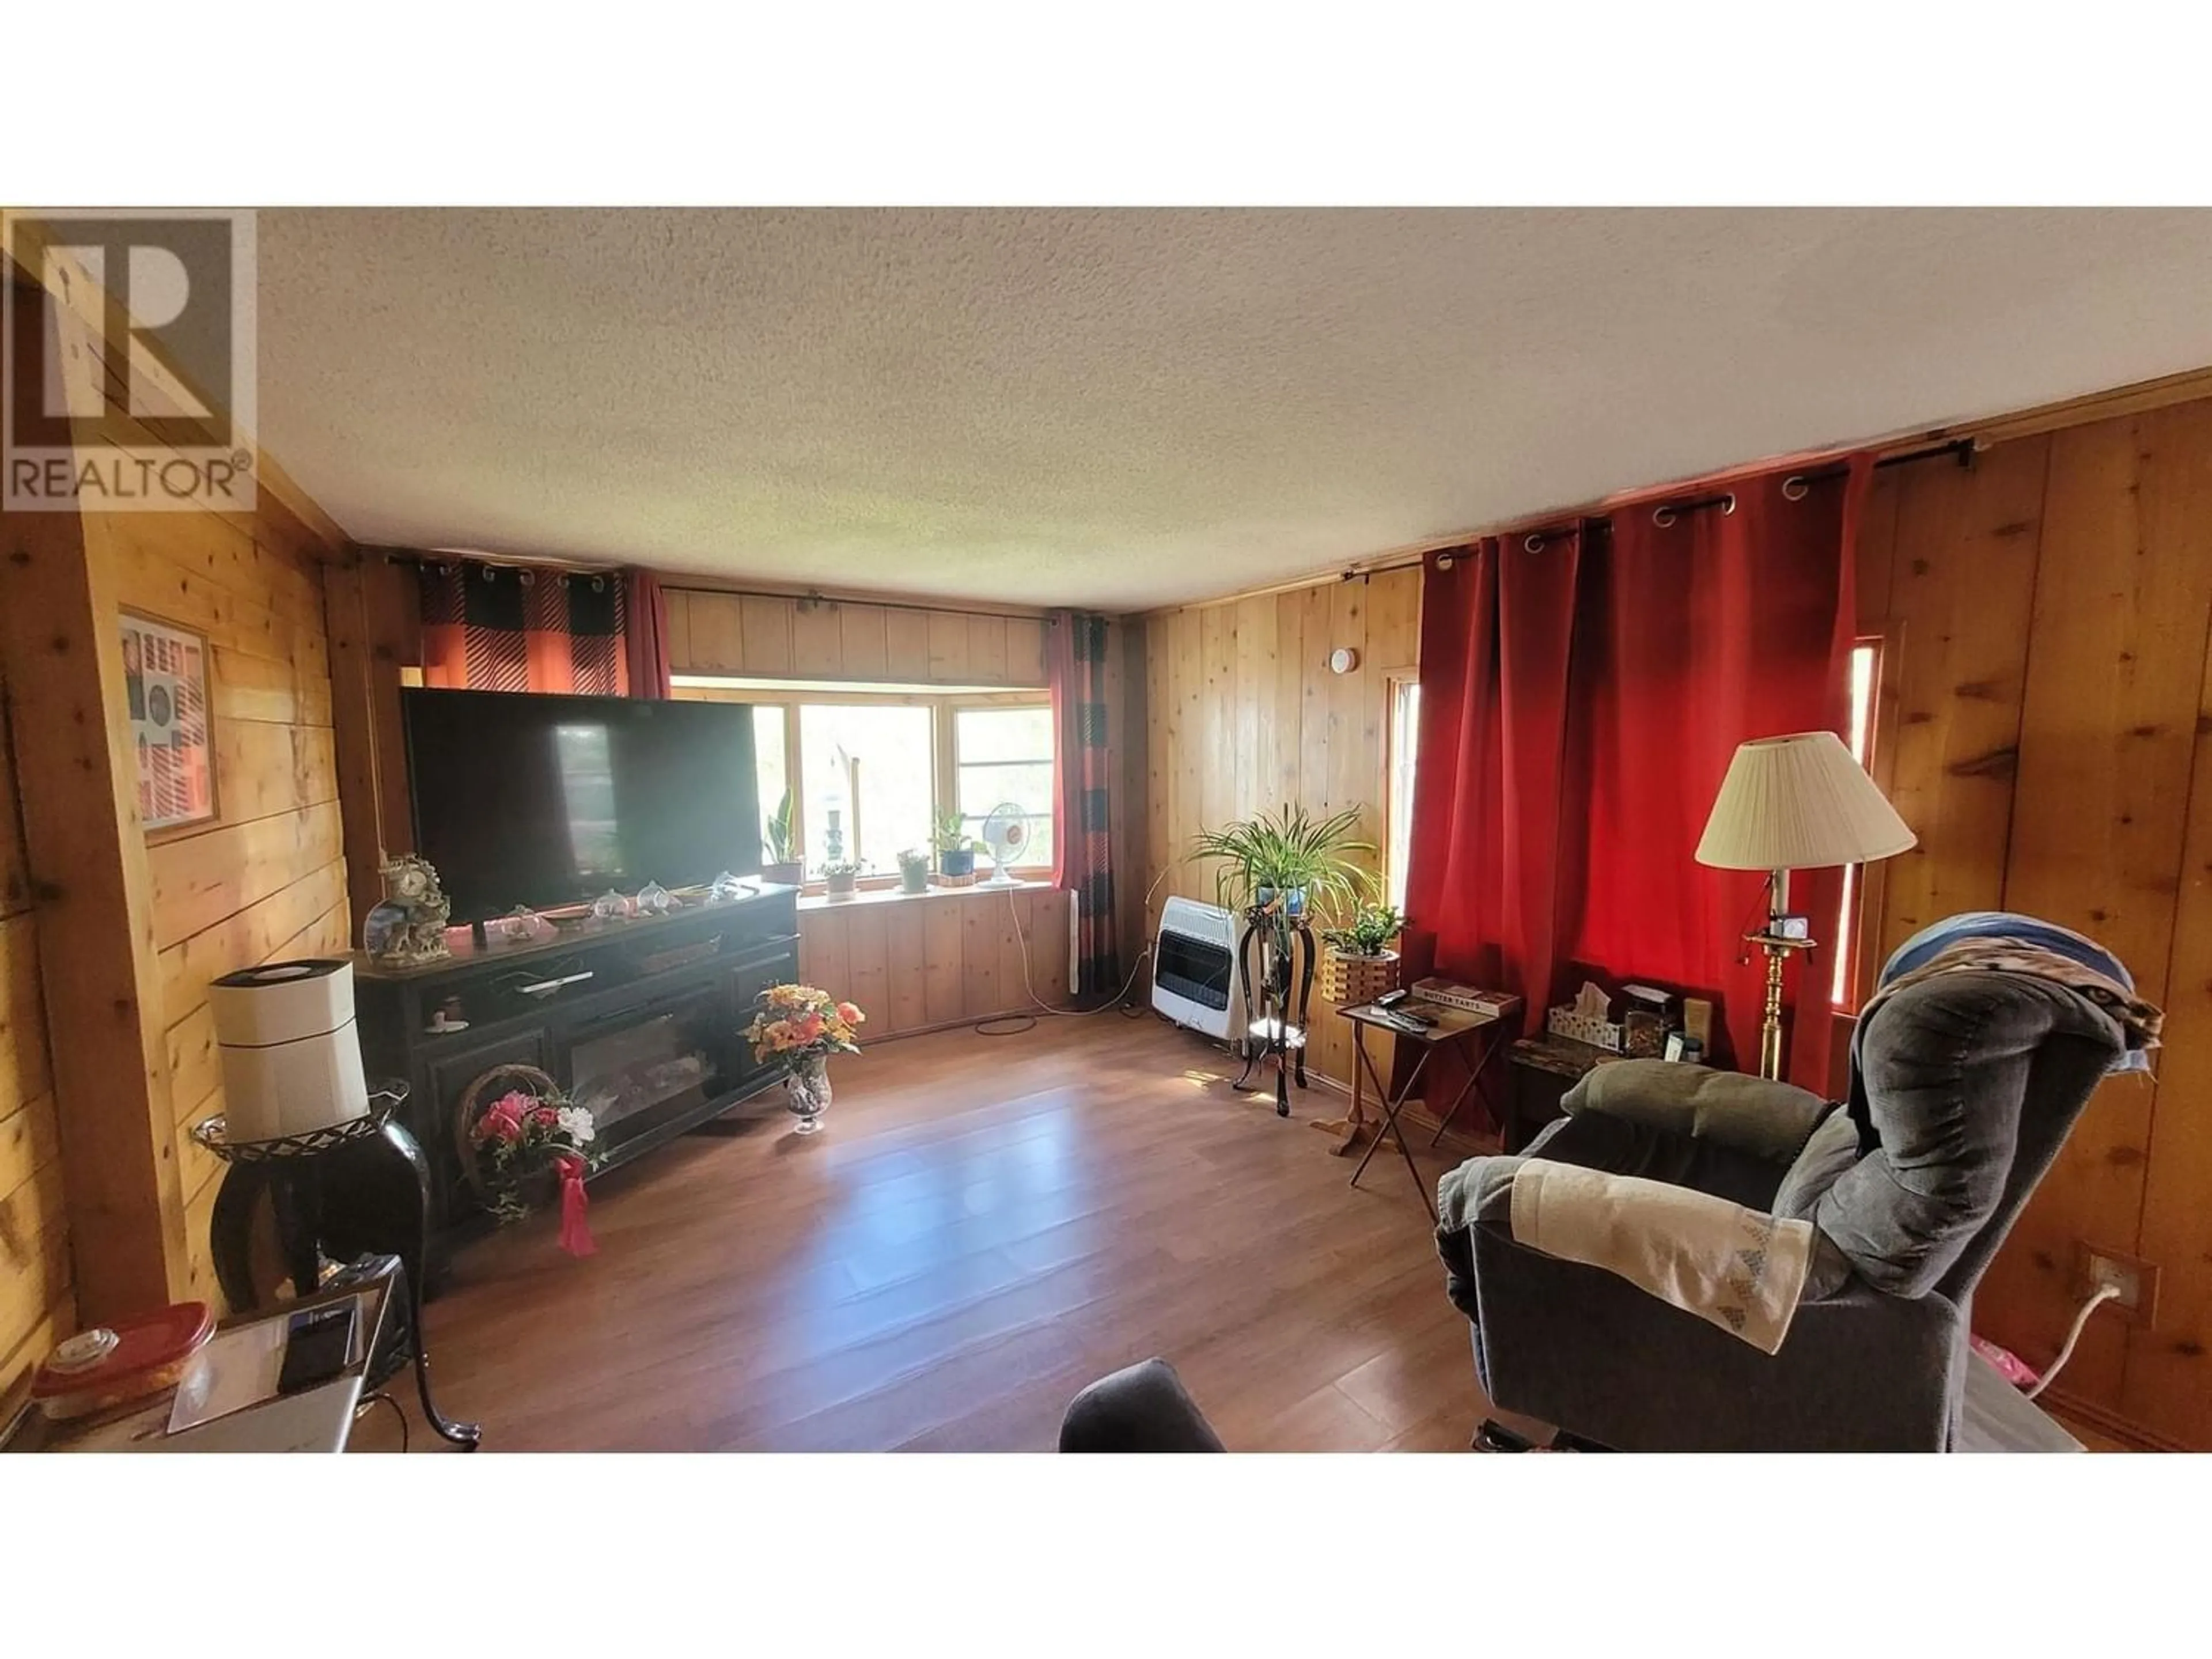 Living room for 5475 ELLIOT LAKE ROAD, 100 Mile House British Columbia V0K2E1